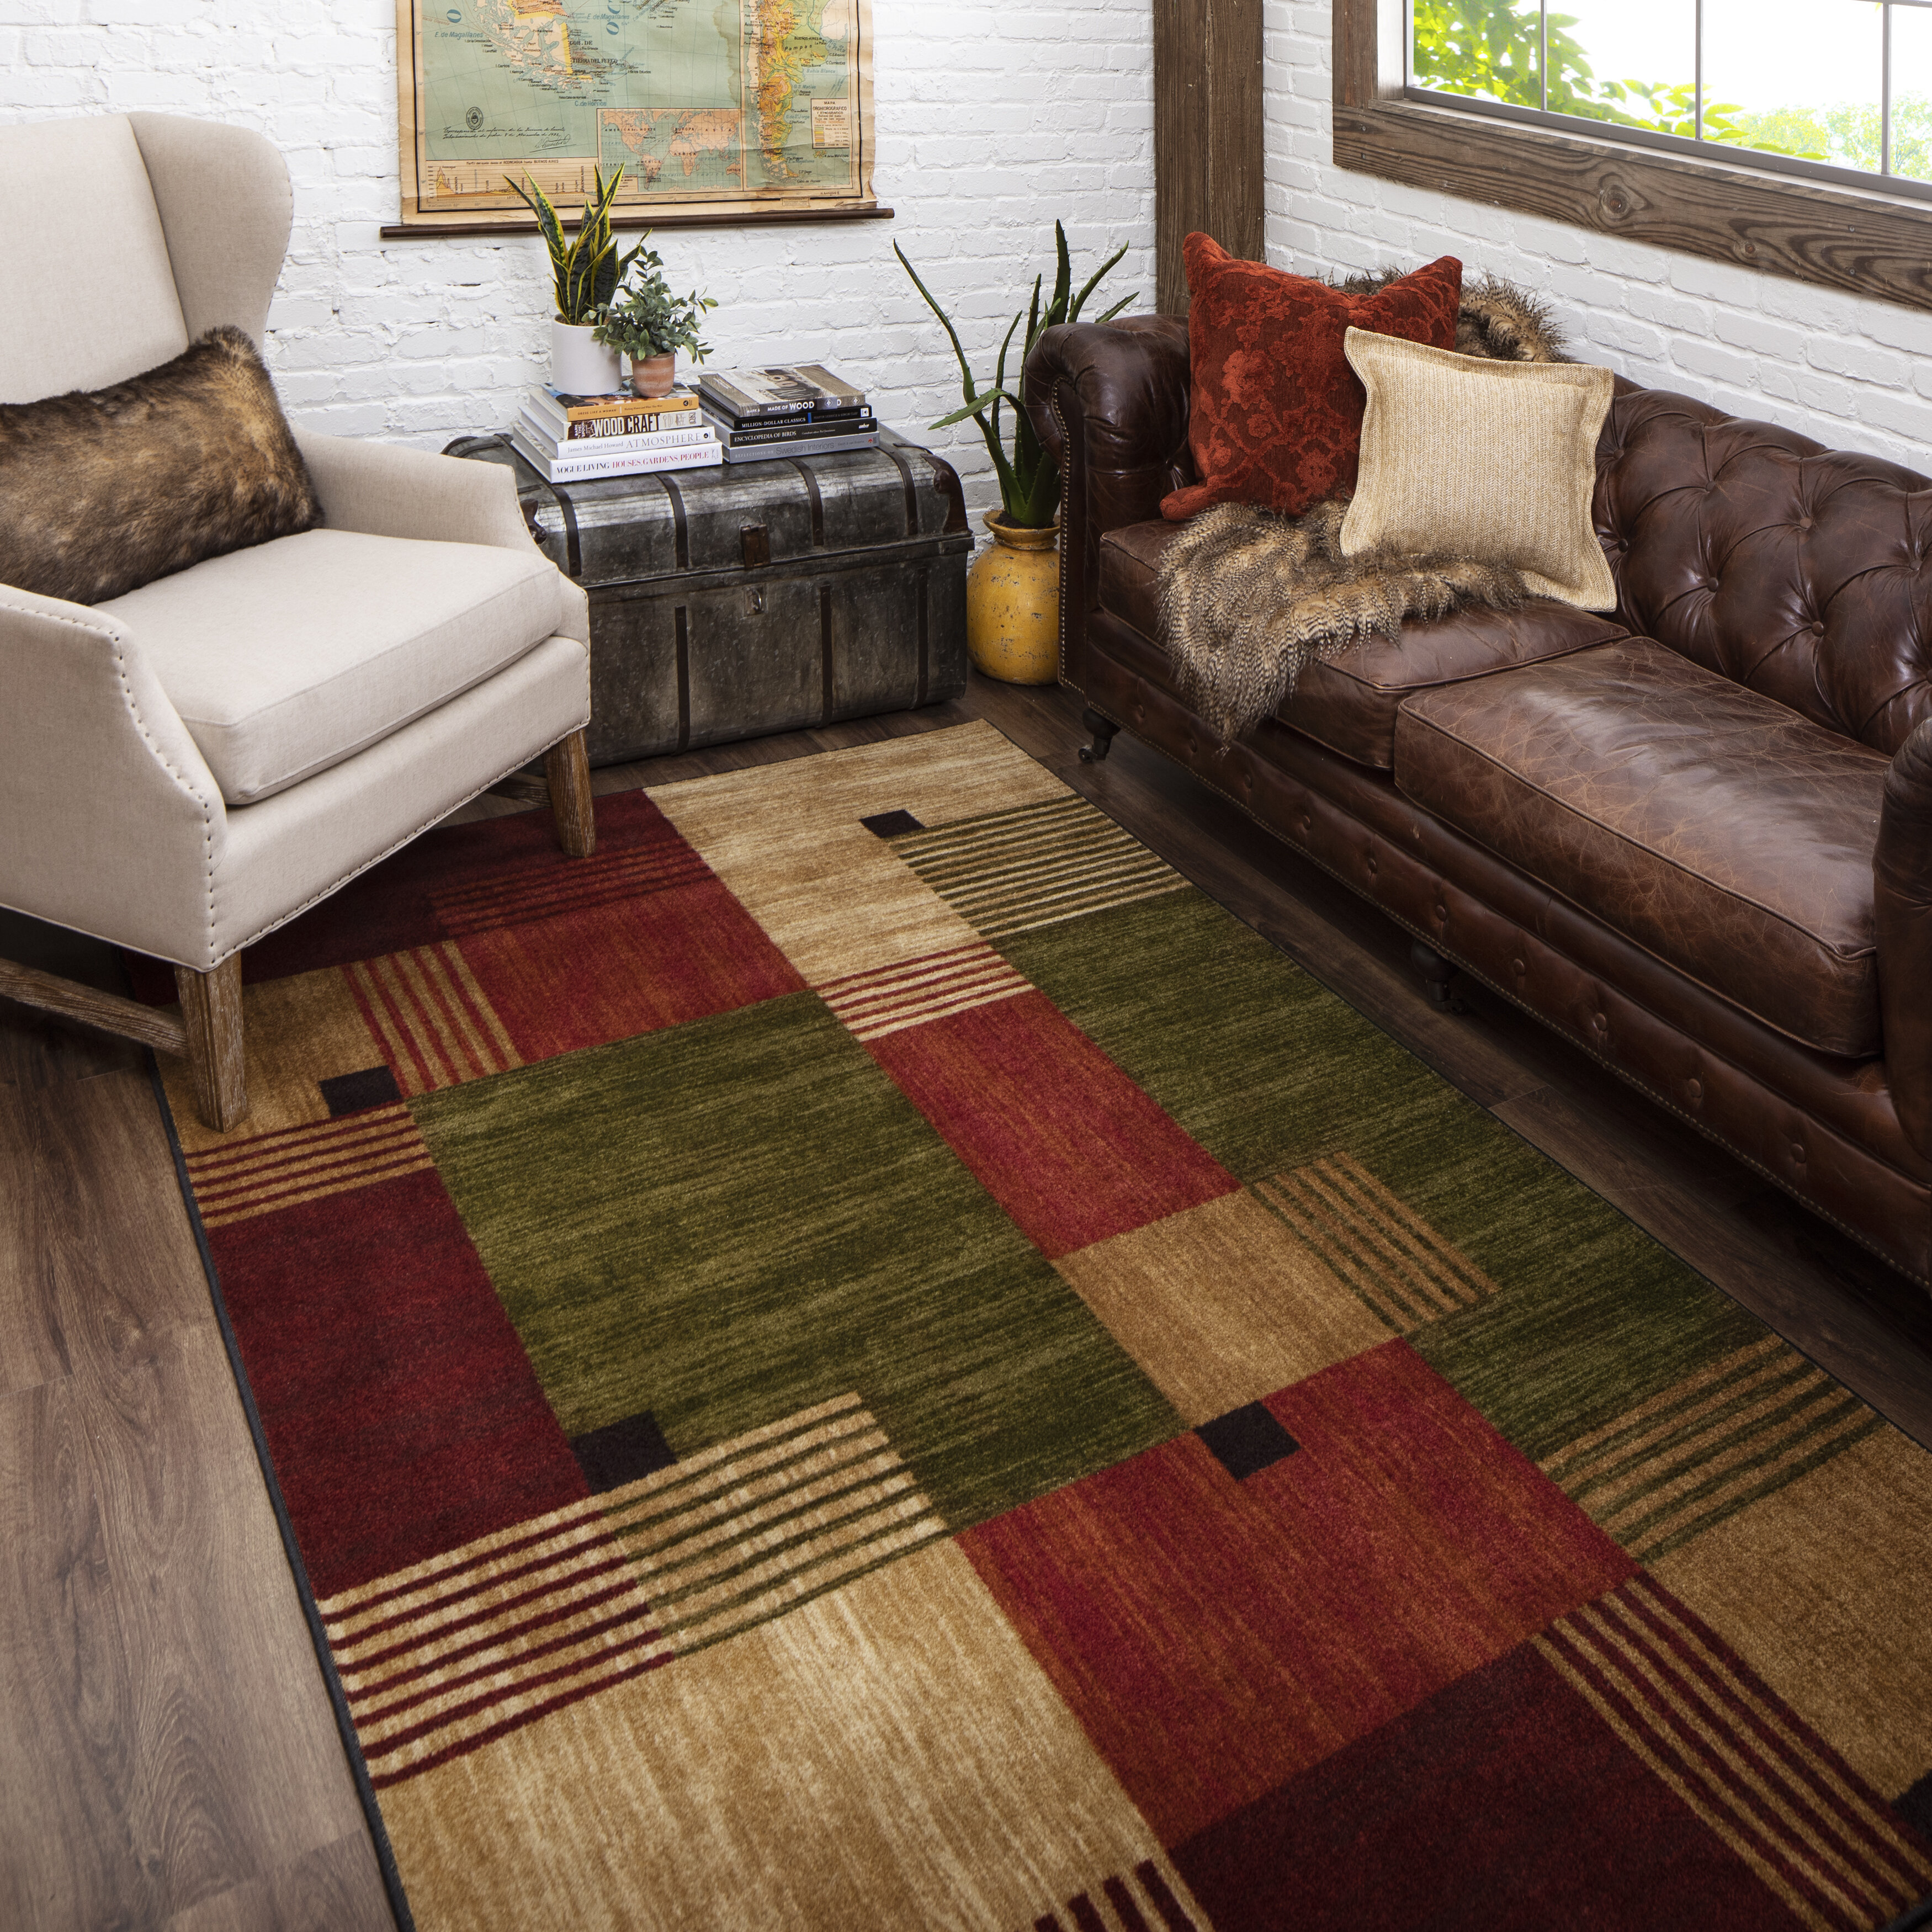 Vintage Rug Beige Brown Floral Design Living Room Carpet Deluxe Home Area Mat 